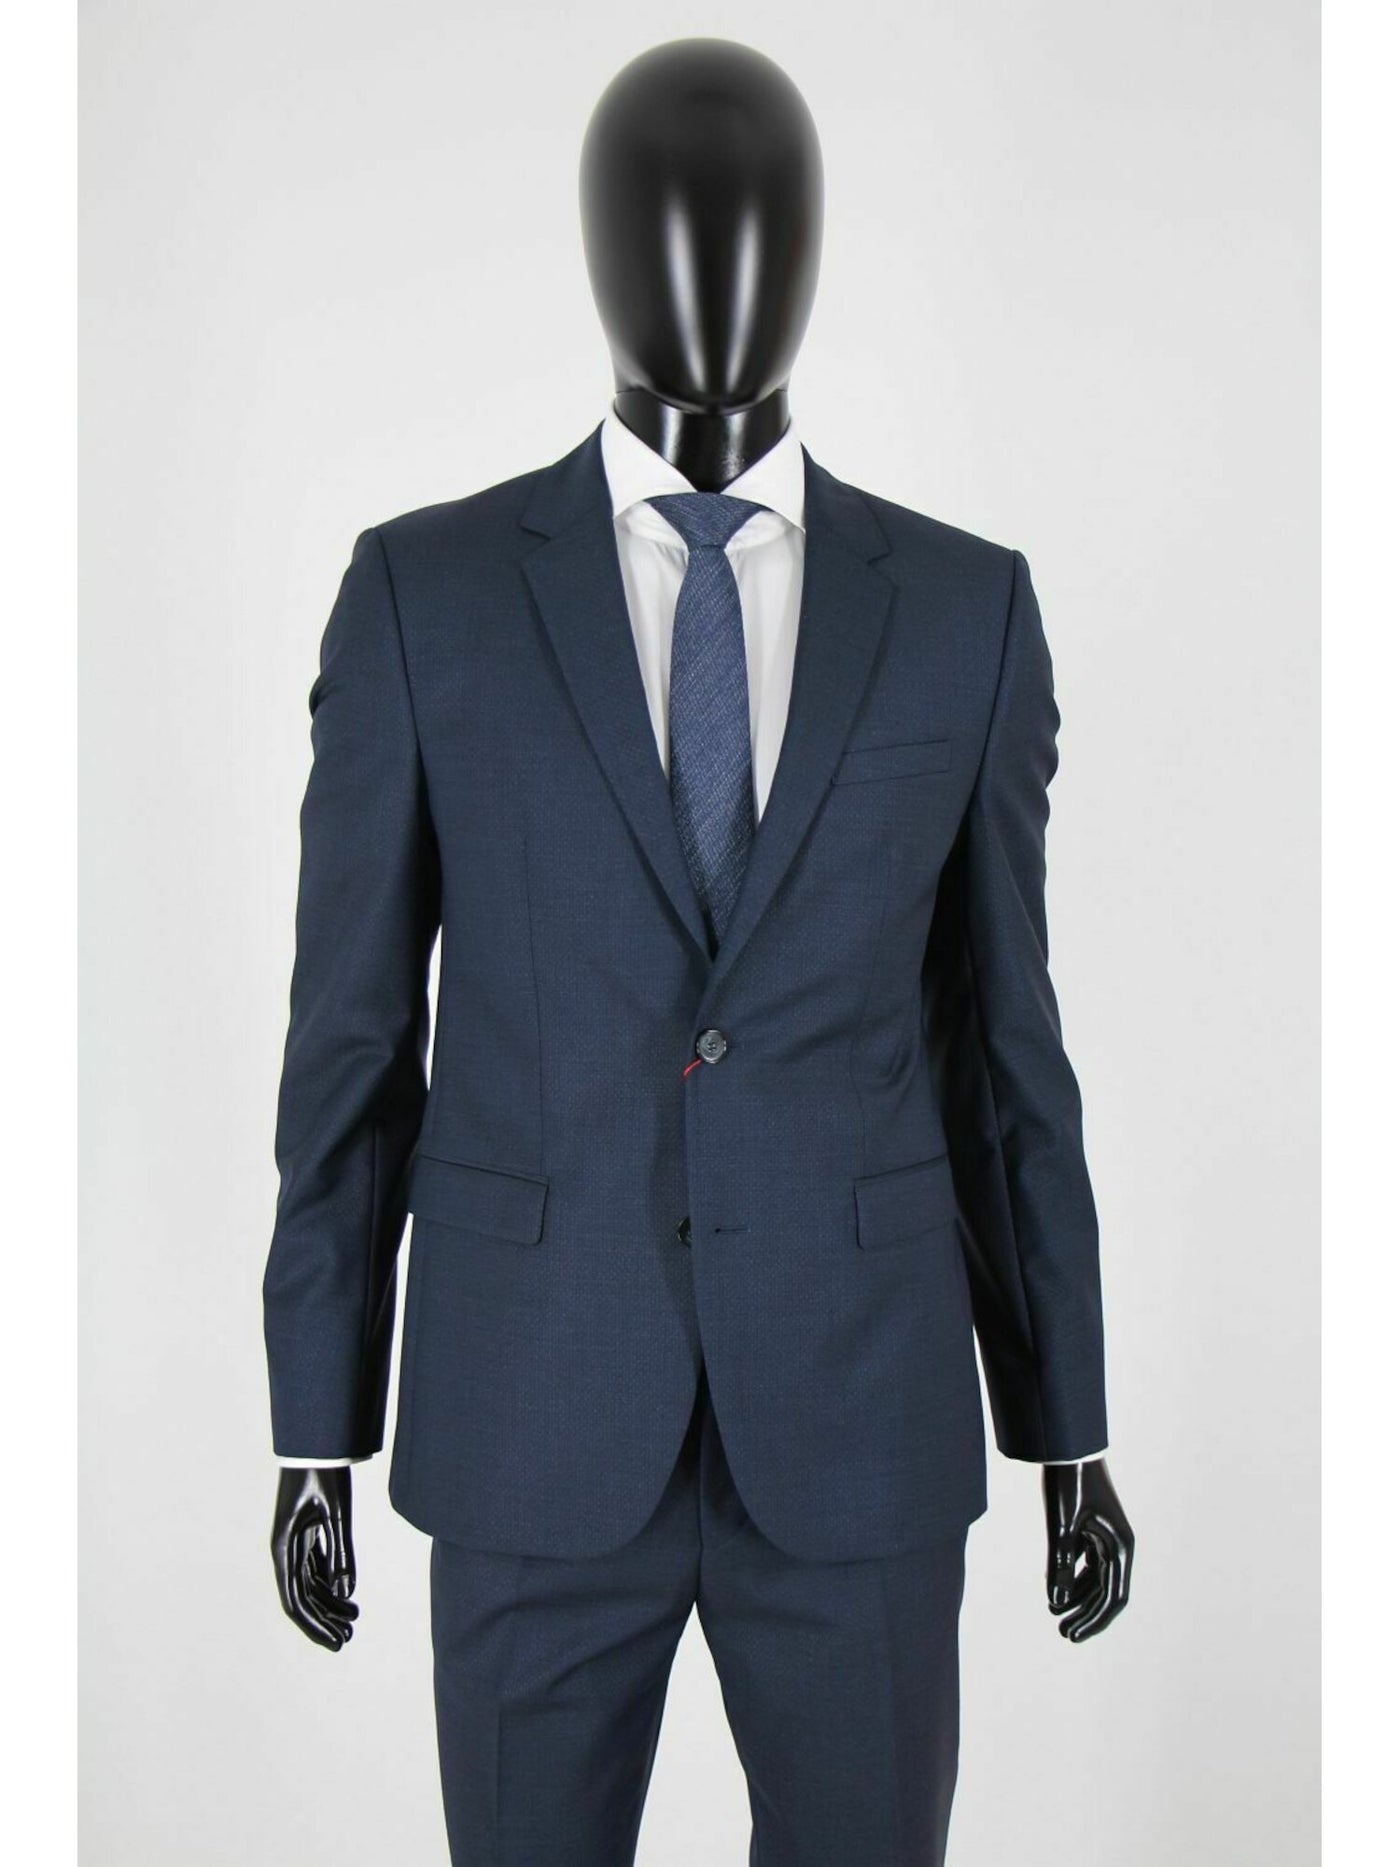 HUGO BOSS Mens Navy Single Breasted, Extra Slim Fit Wool Blend Suit Separate Blazer Jacket 44R